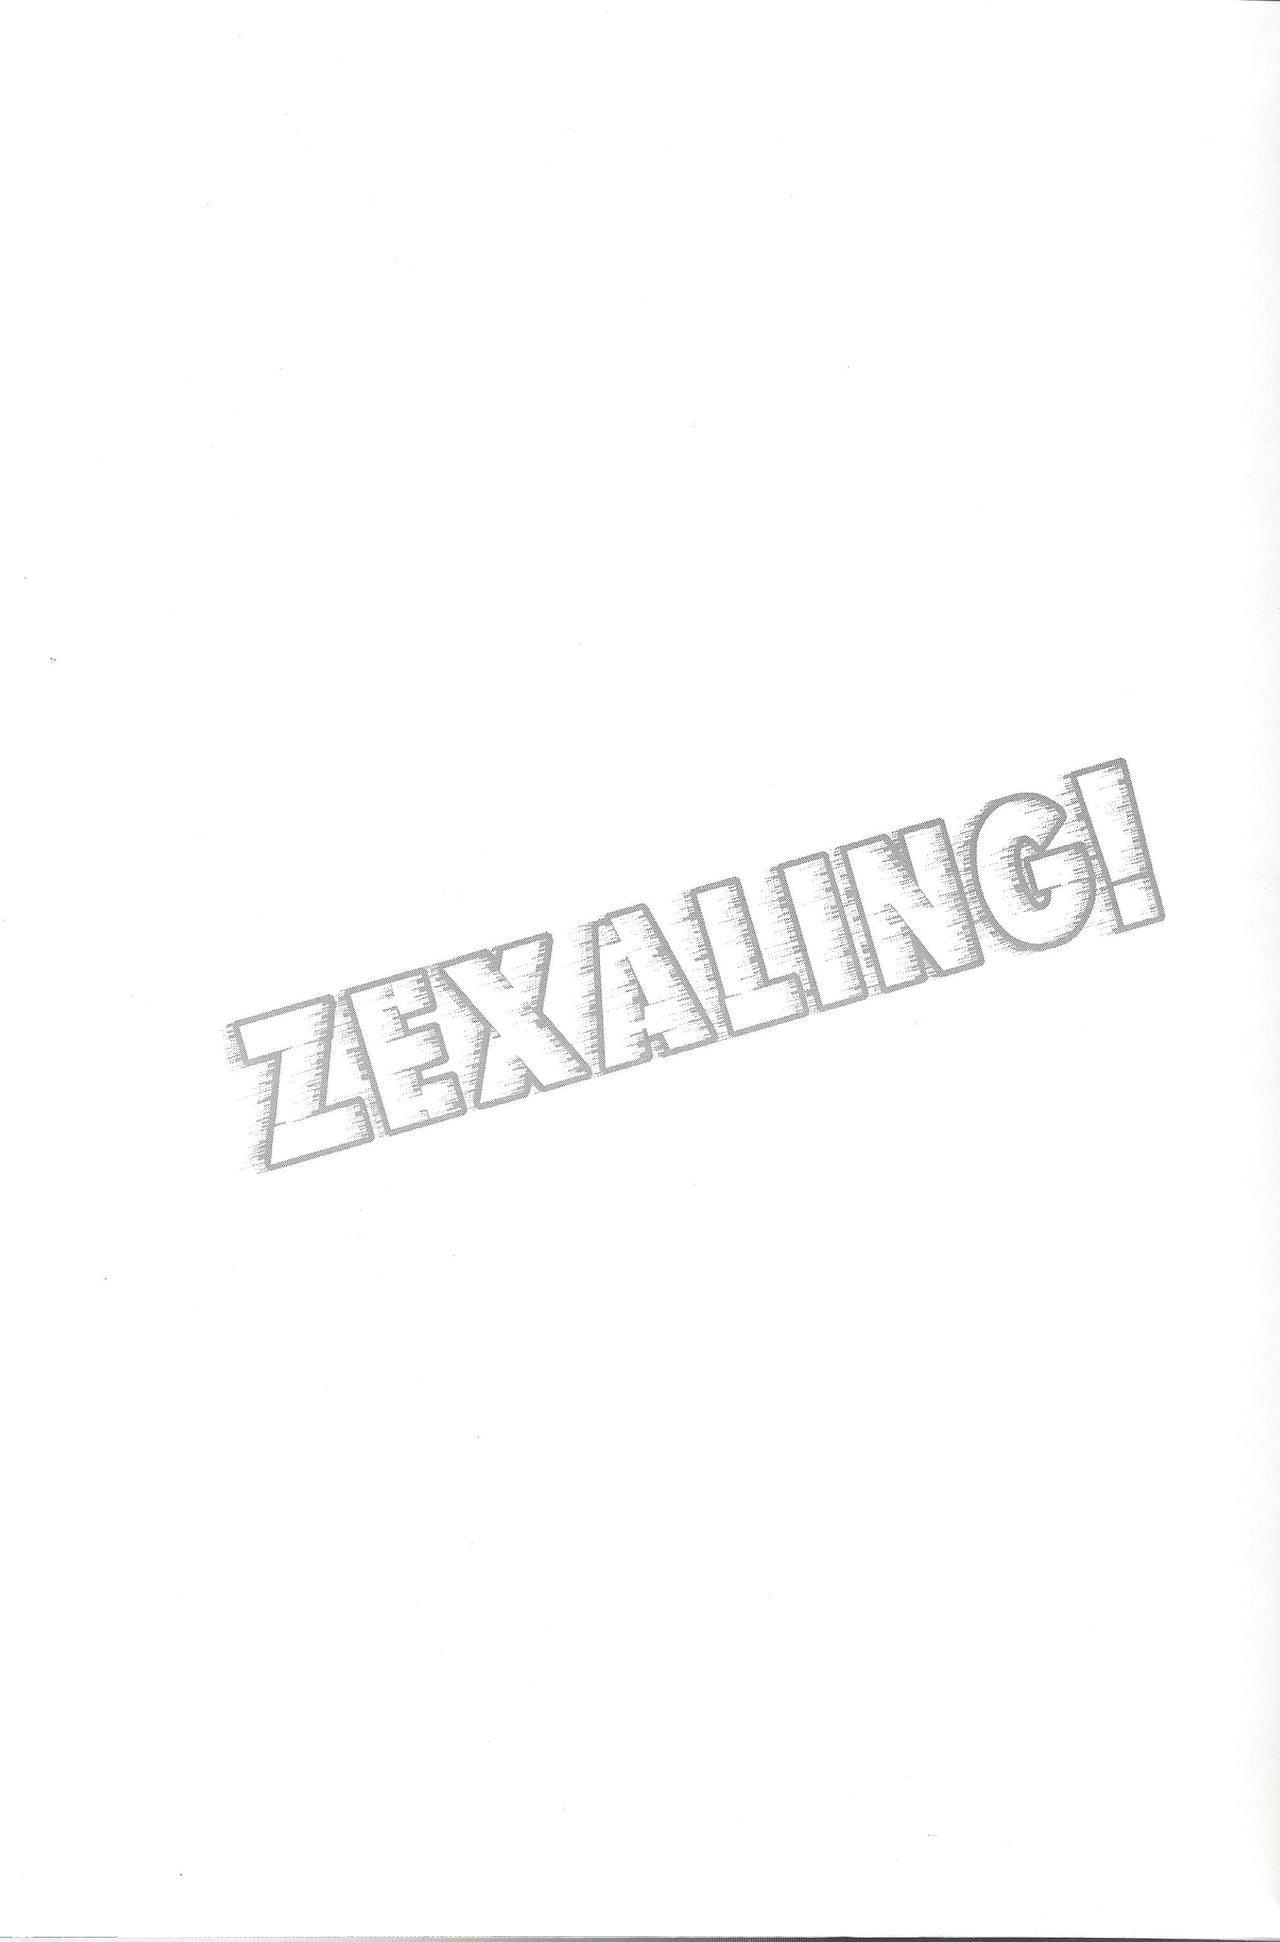 ZEXALING! 2